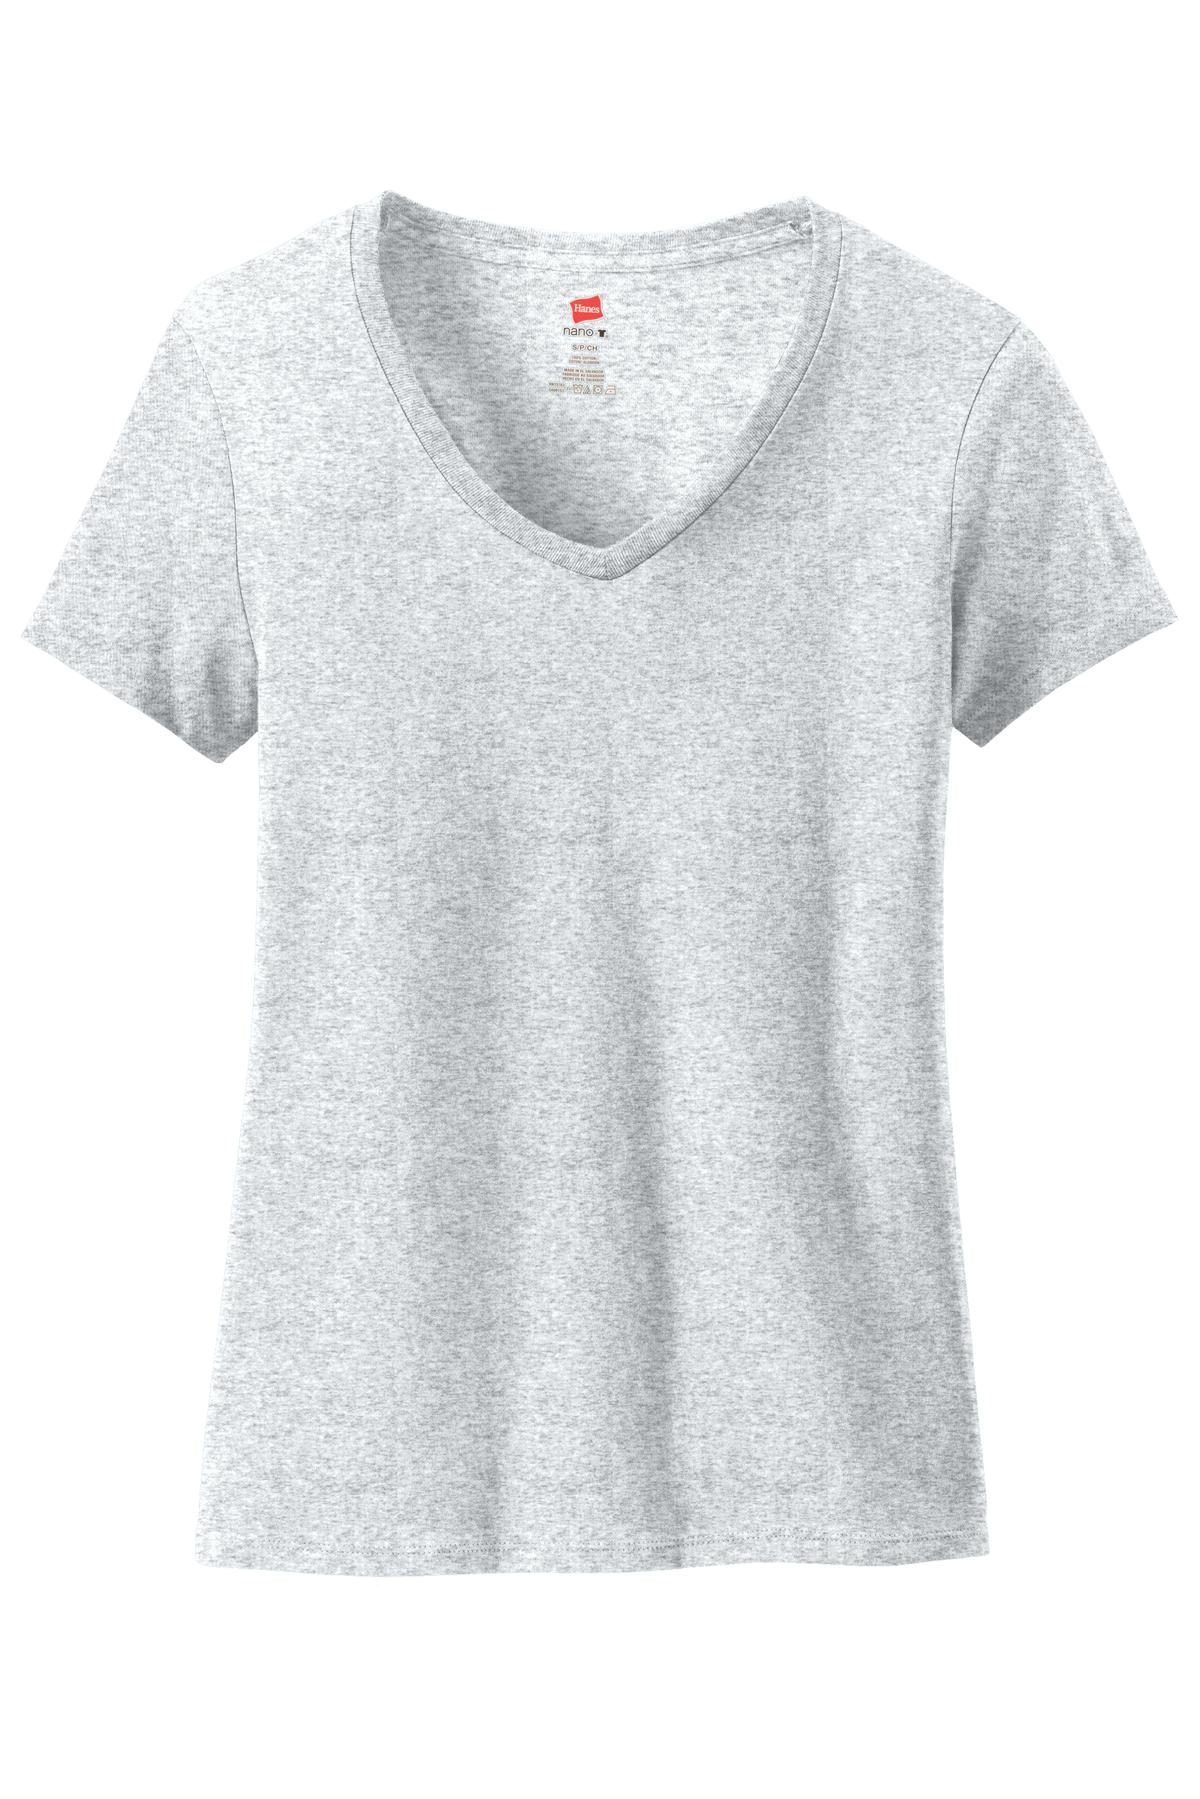 Hanes Ladies Nano-T Cotton V-Neck T-Shirt | 5Boys Apparel